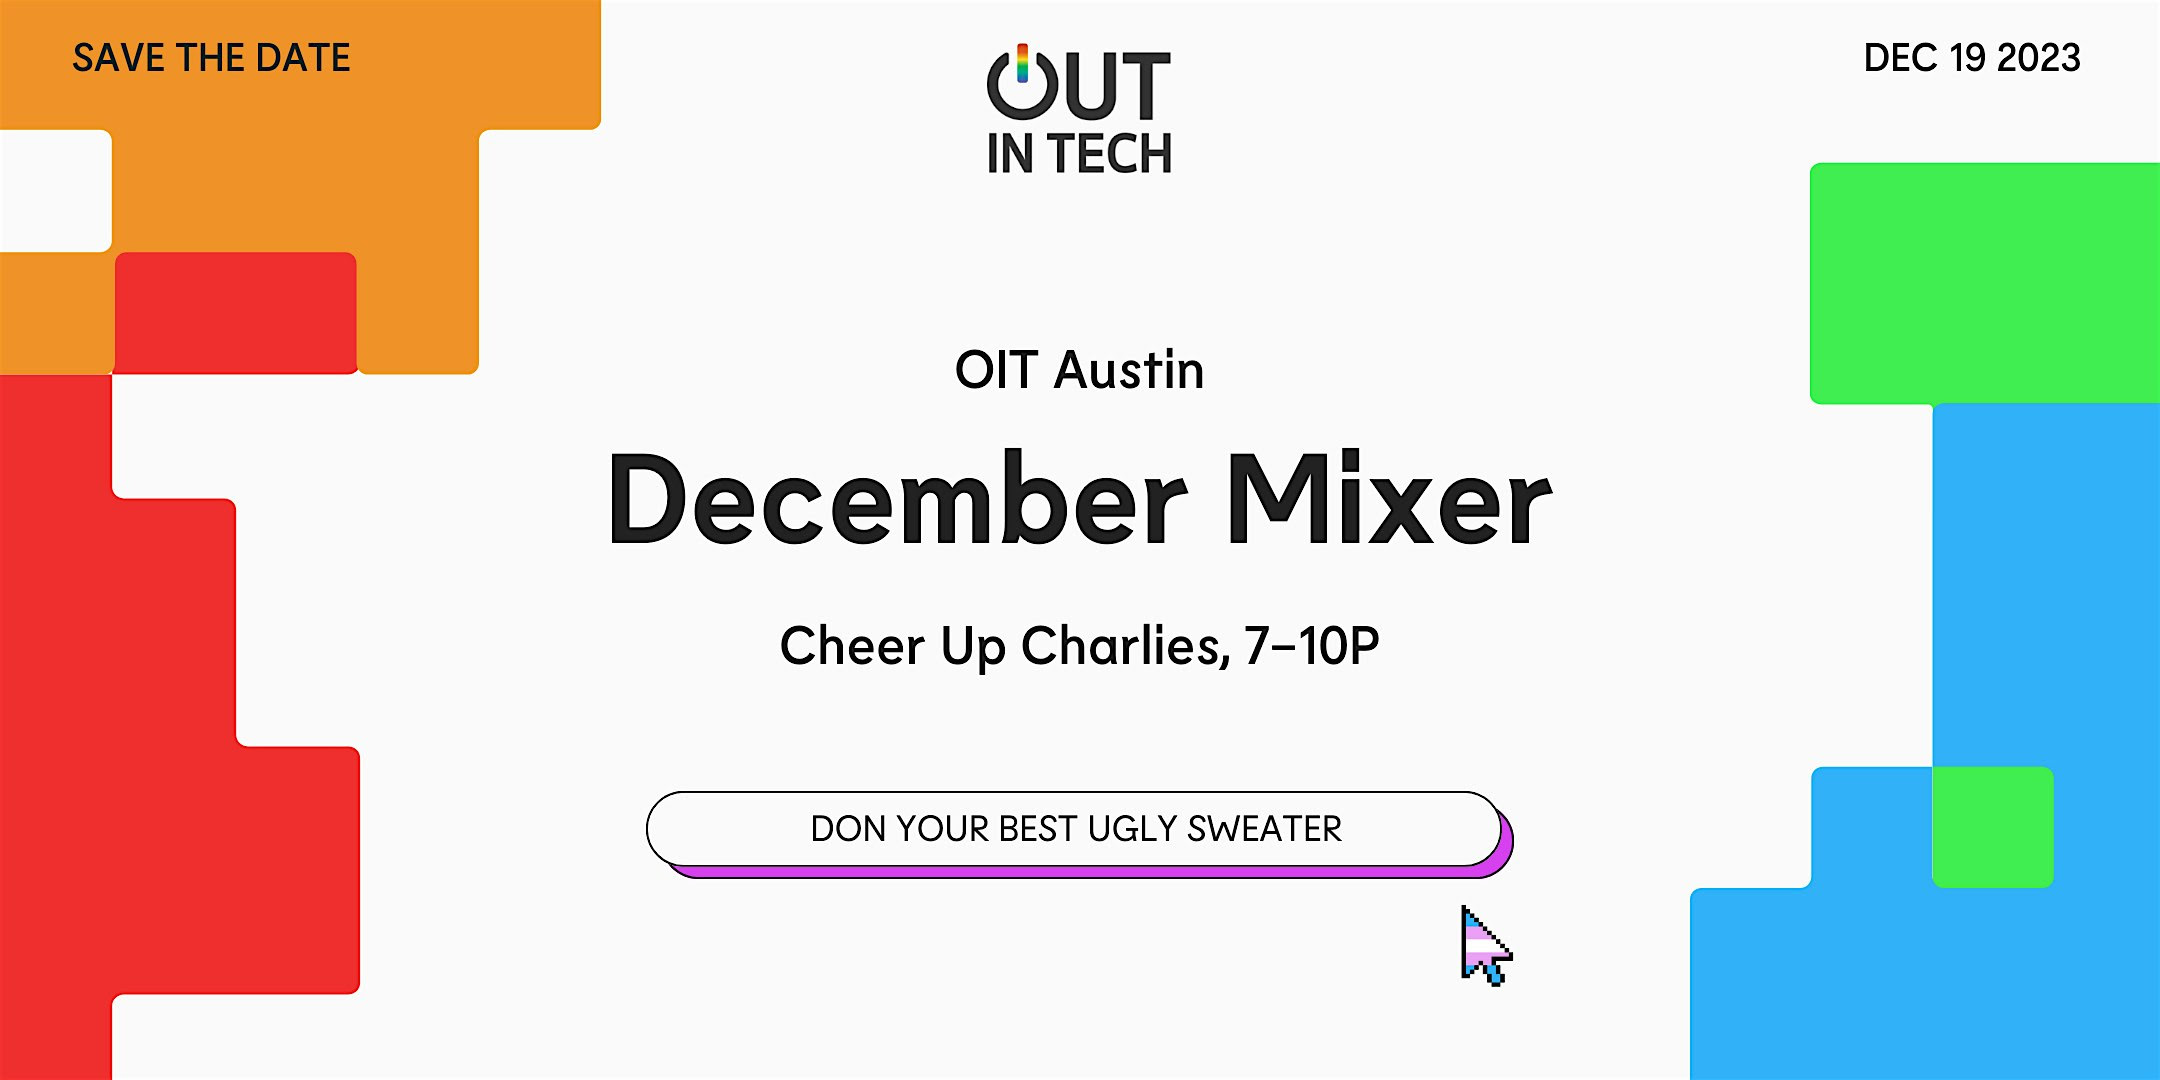 Out in Tech Austin | December Mixer